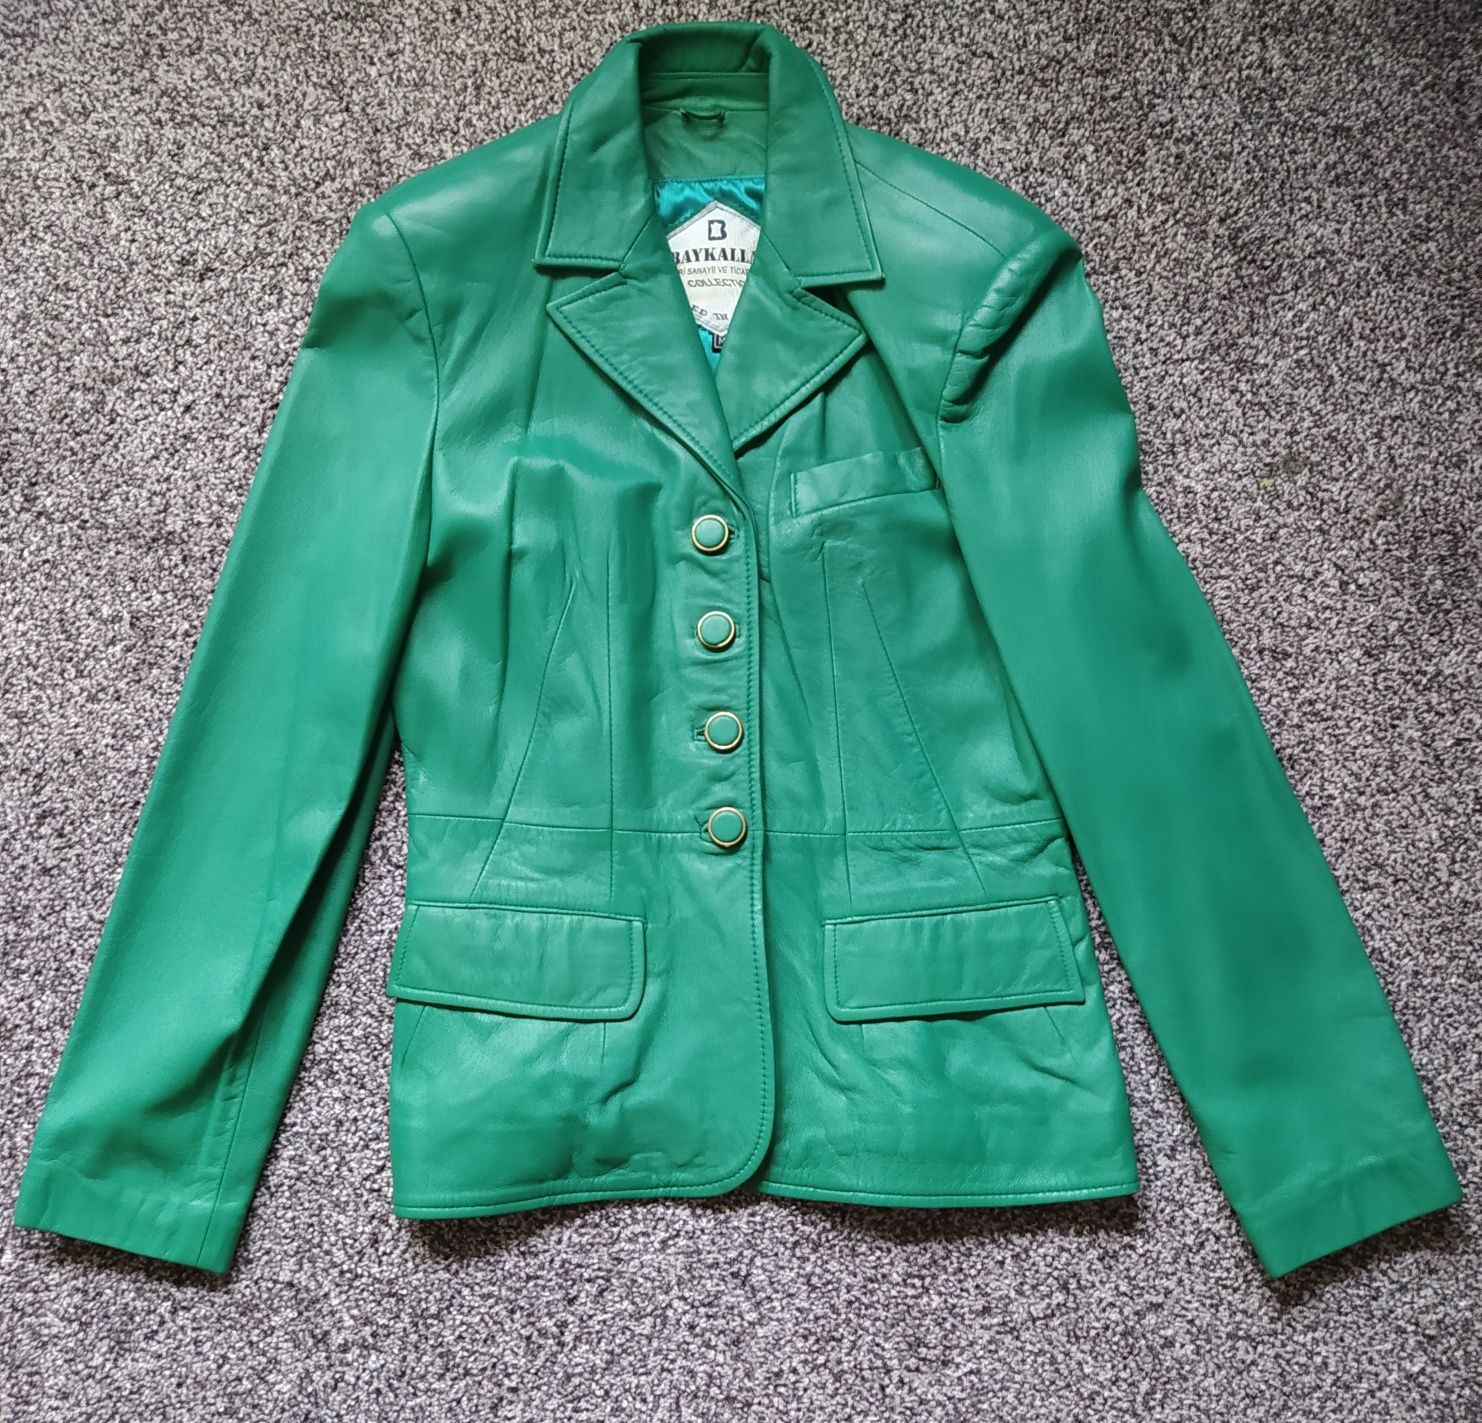 Куртка сизая / Полупальто зелёное, женская, кожа, уценка